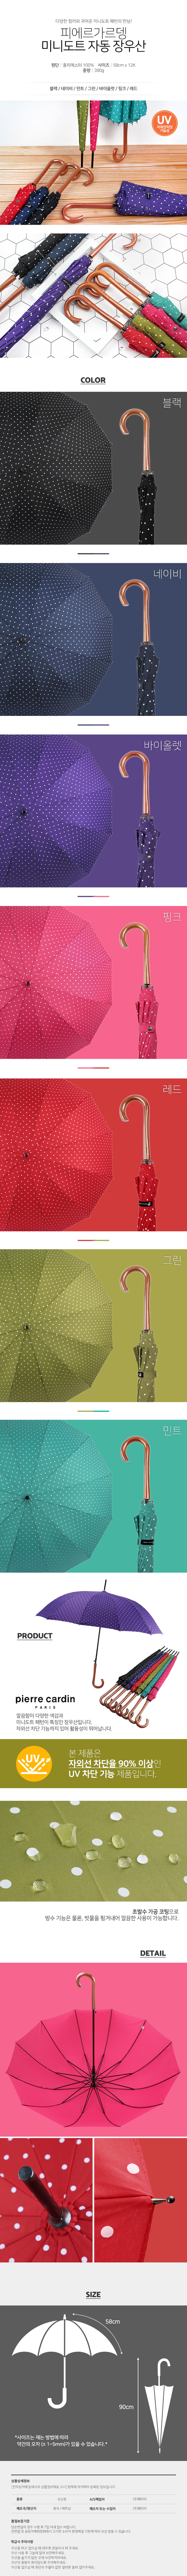 피에르가르뎅 미니도트장우산